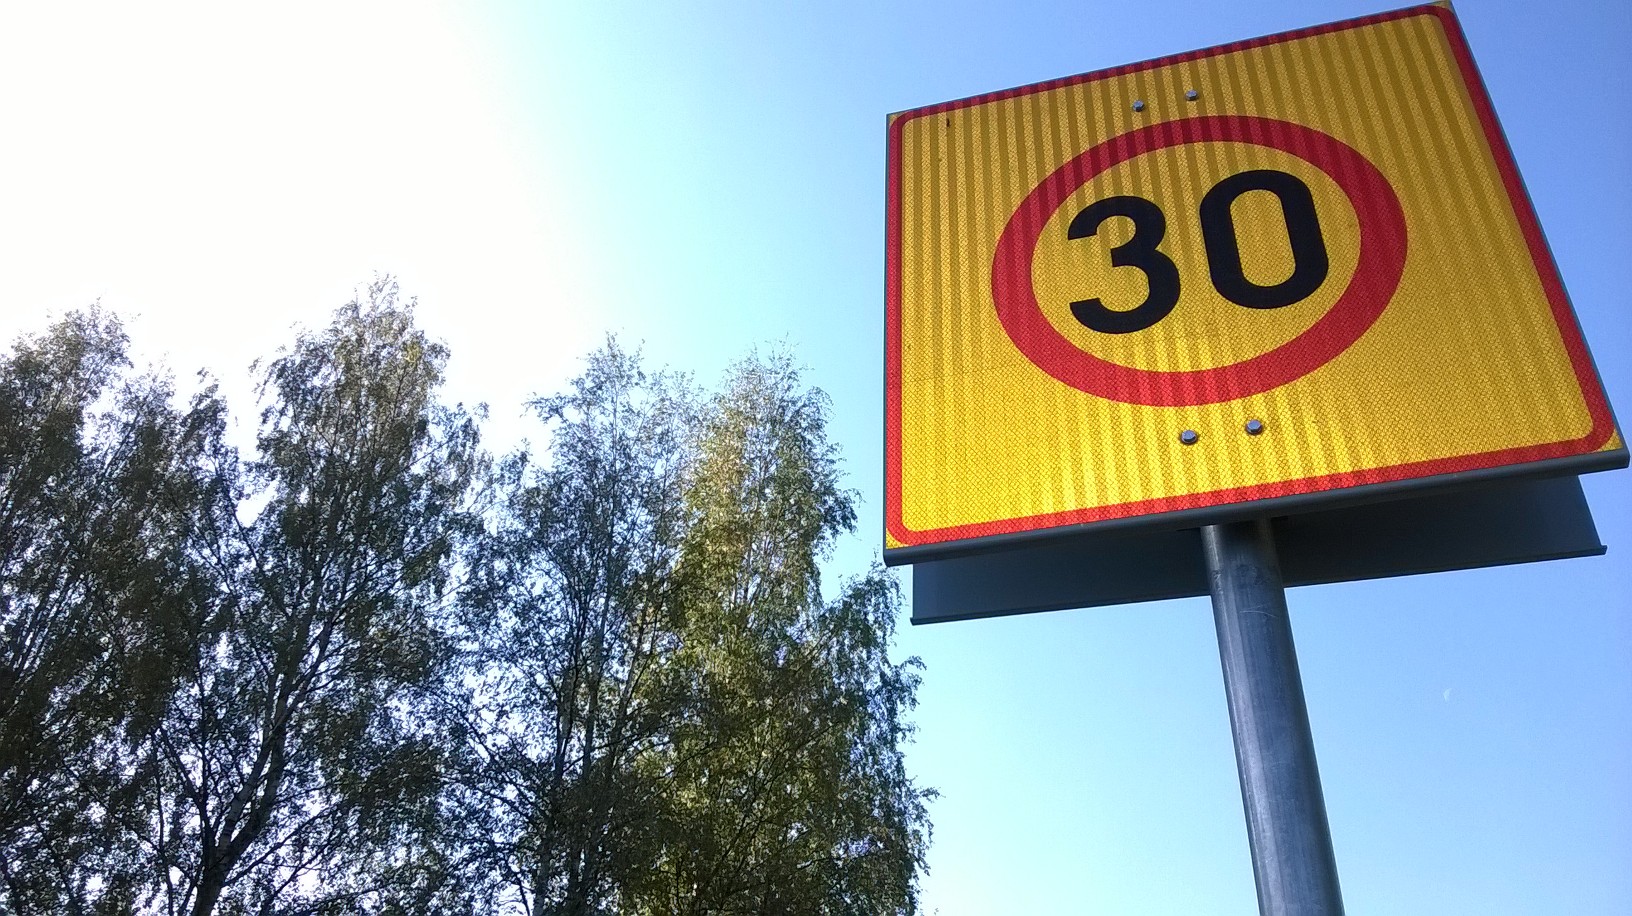 Die finnische Sicherheitsbehörde fordert eine Erhöhung der Geschwindigkeitsbegrenzungen auf 30 km/h auf finnischen Straßen